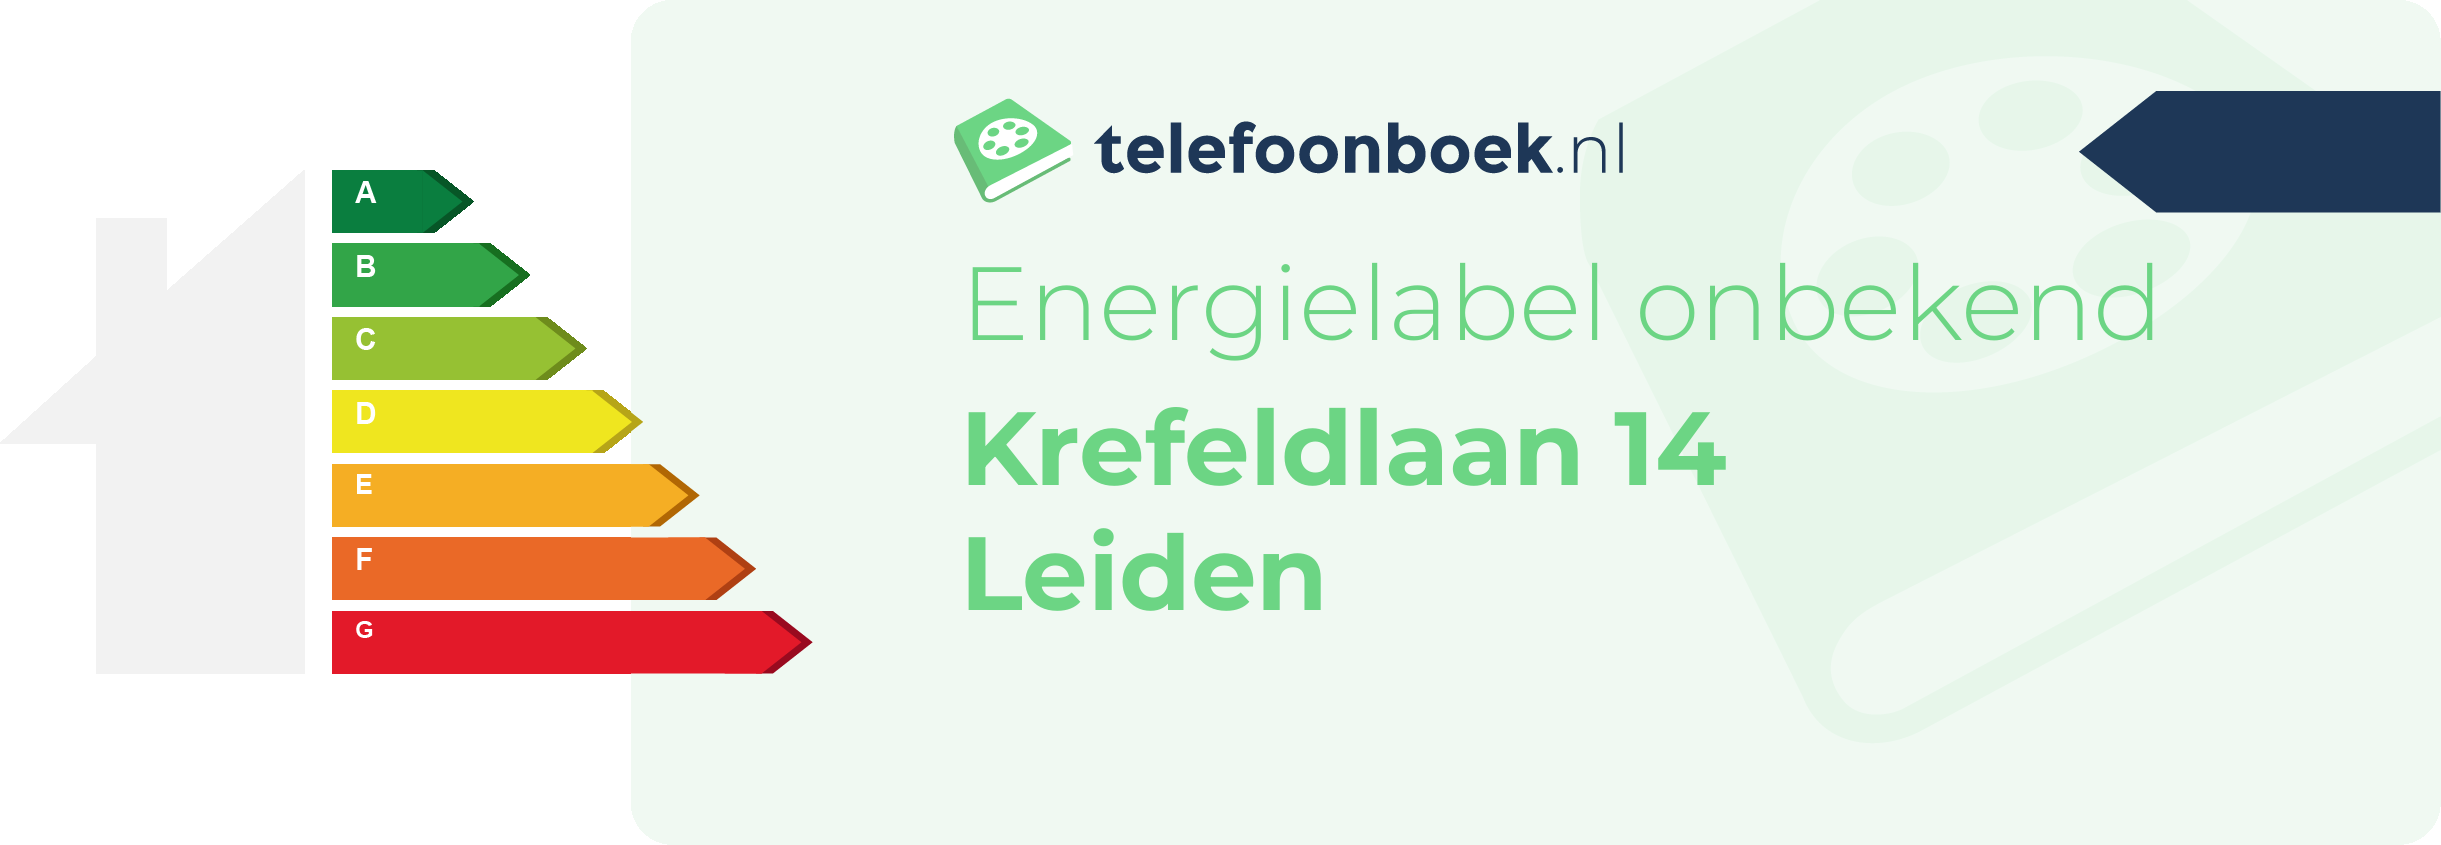 Energielabel Krefeldlaan 14 Leiden